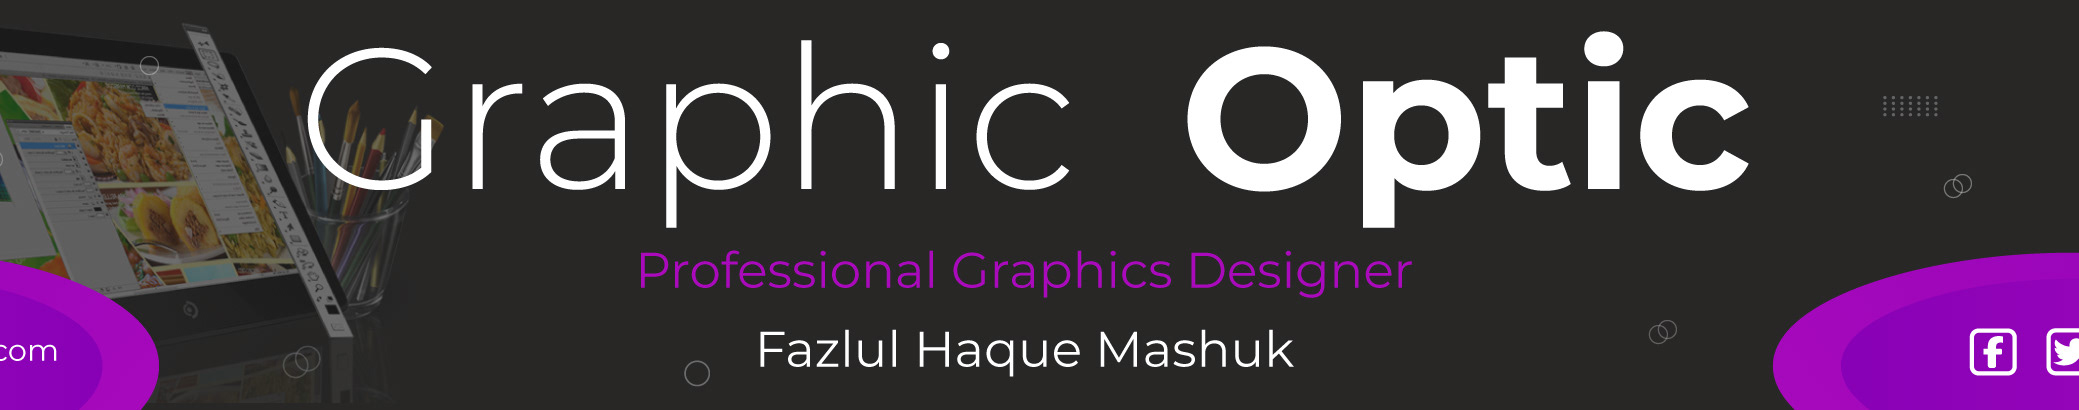 Profil-Banner von Fazlul Haque Mashuk